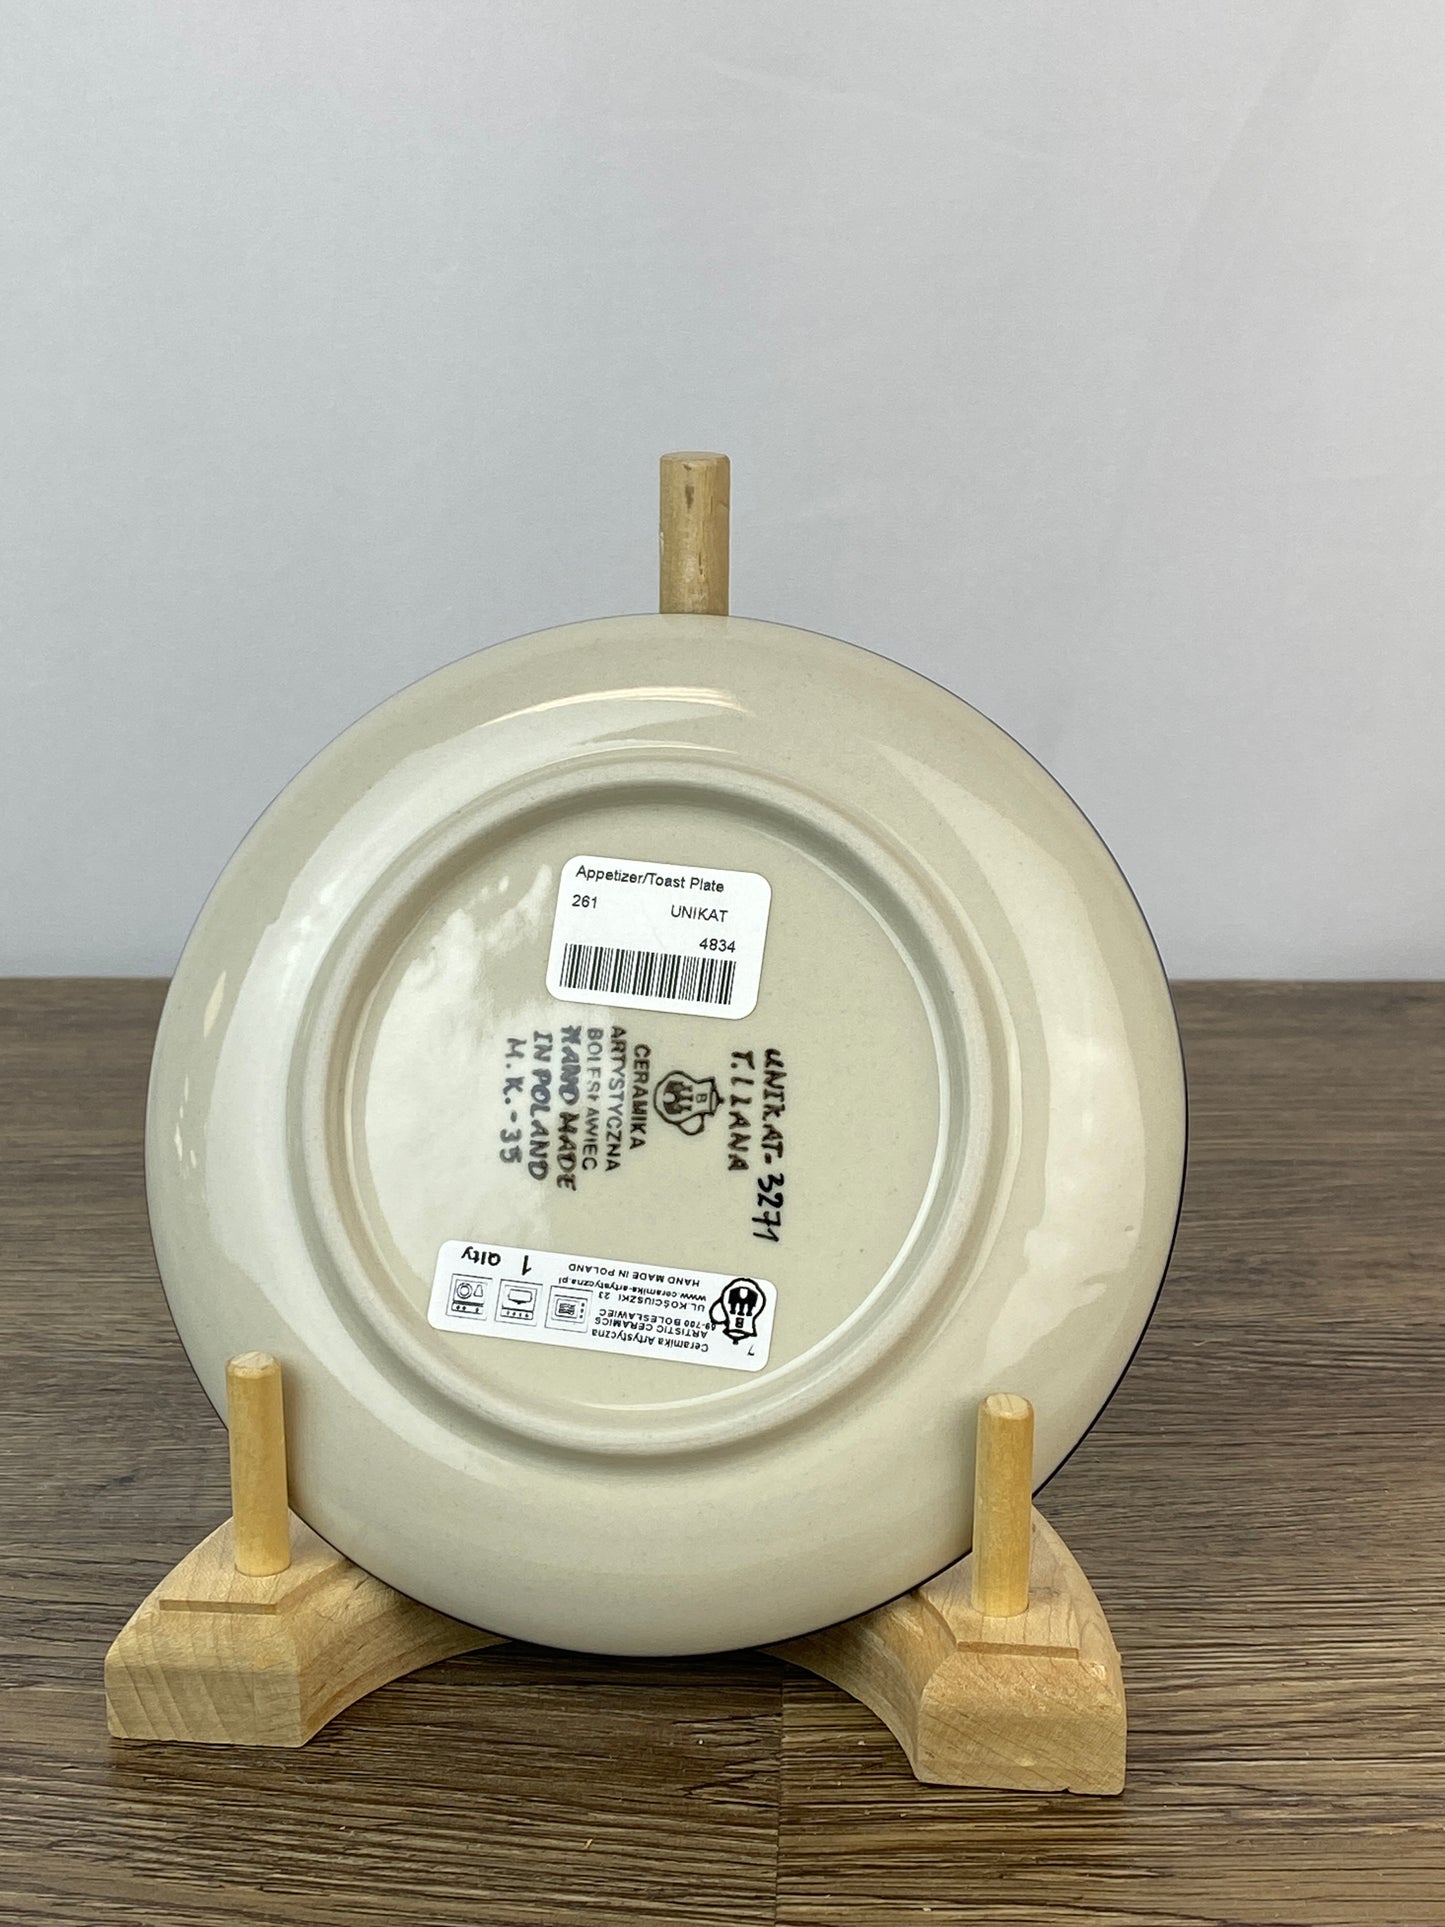 6" Unikat Toast Plate - Shape 261 - Pattern U3271